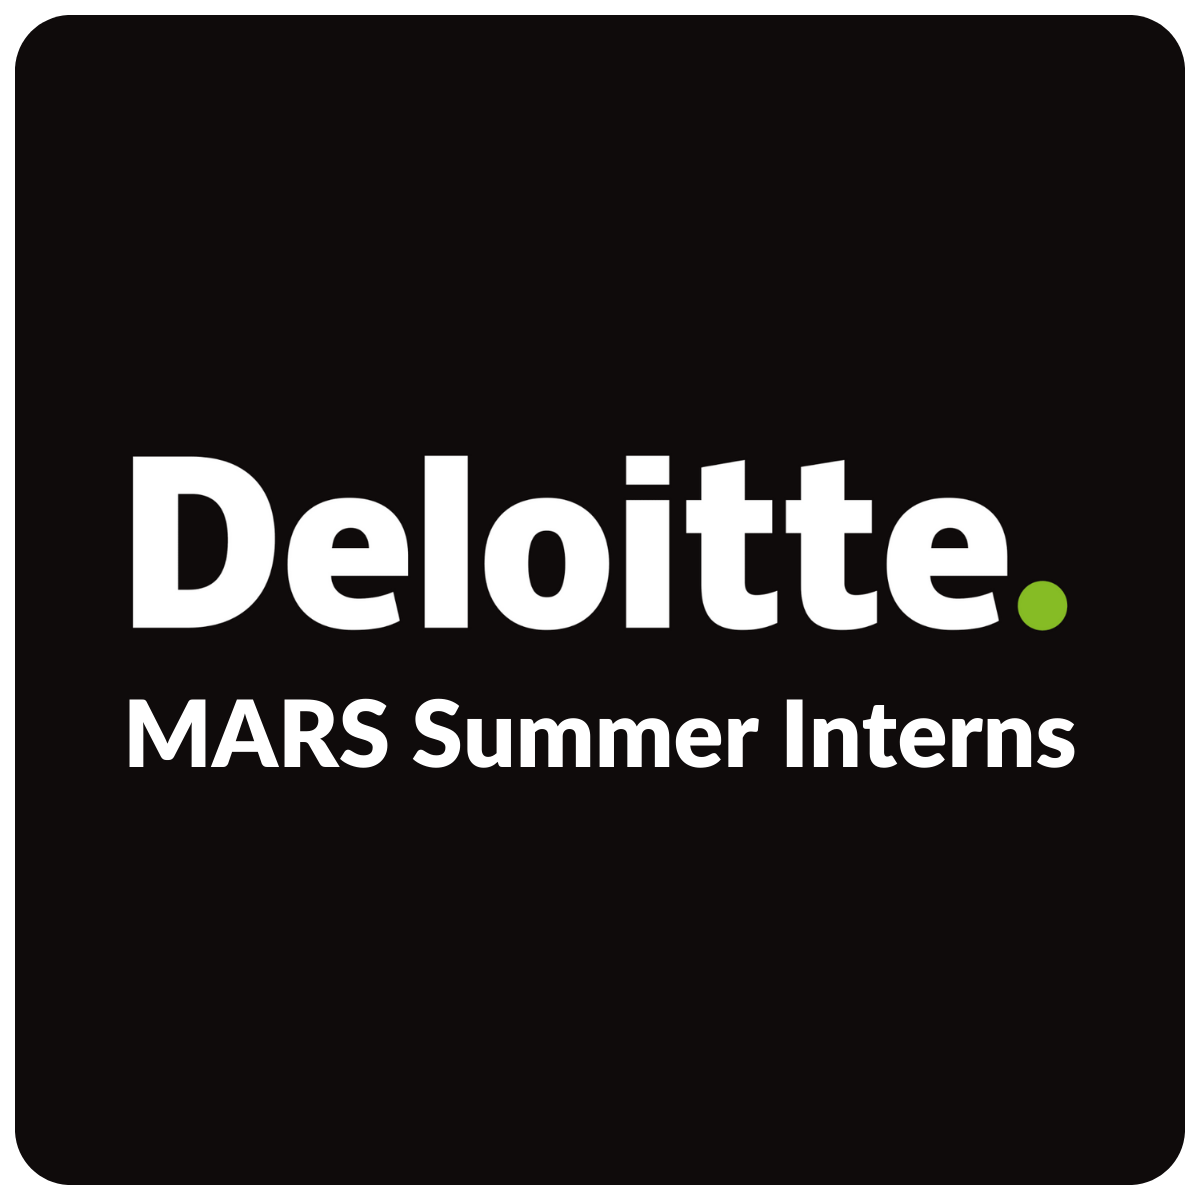 MARS Summer Interns